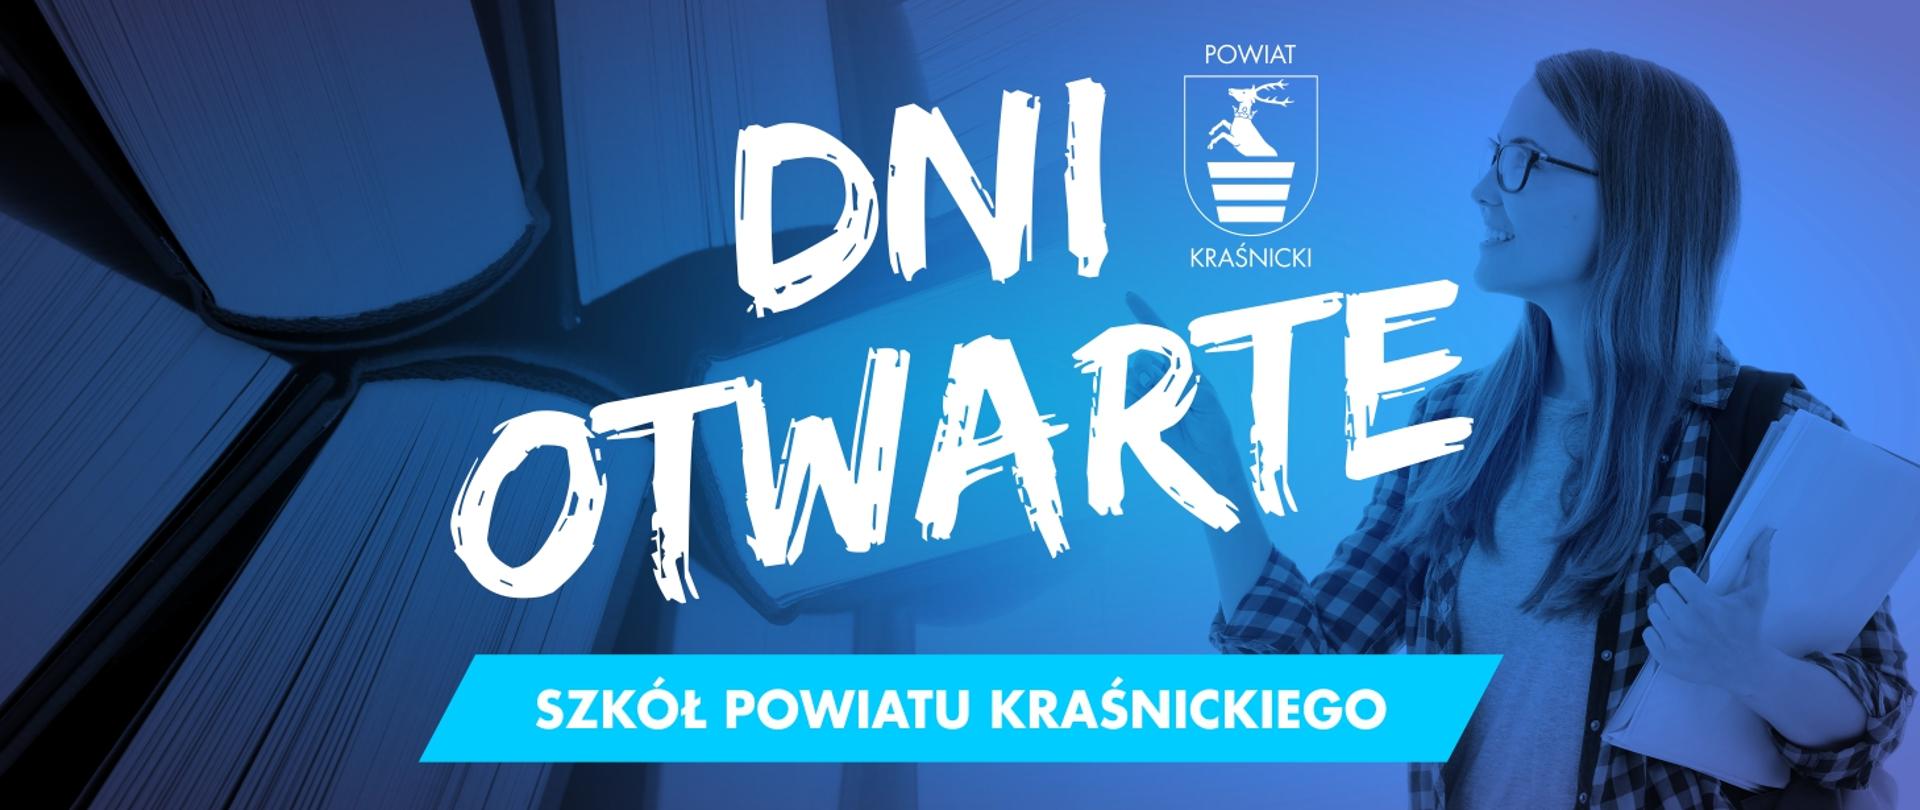 Baner promujący dni otwarte szkół Powiatu Kraśnickiego. Na niebieskim tle znajduje się logo Powiatu Kraśnickiego, wizerunek uczennicy oraz napis dni otwarte szkół Powiatu Kraśnickiego.